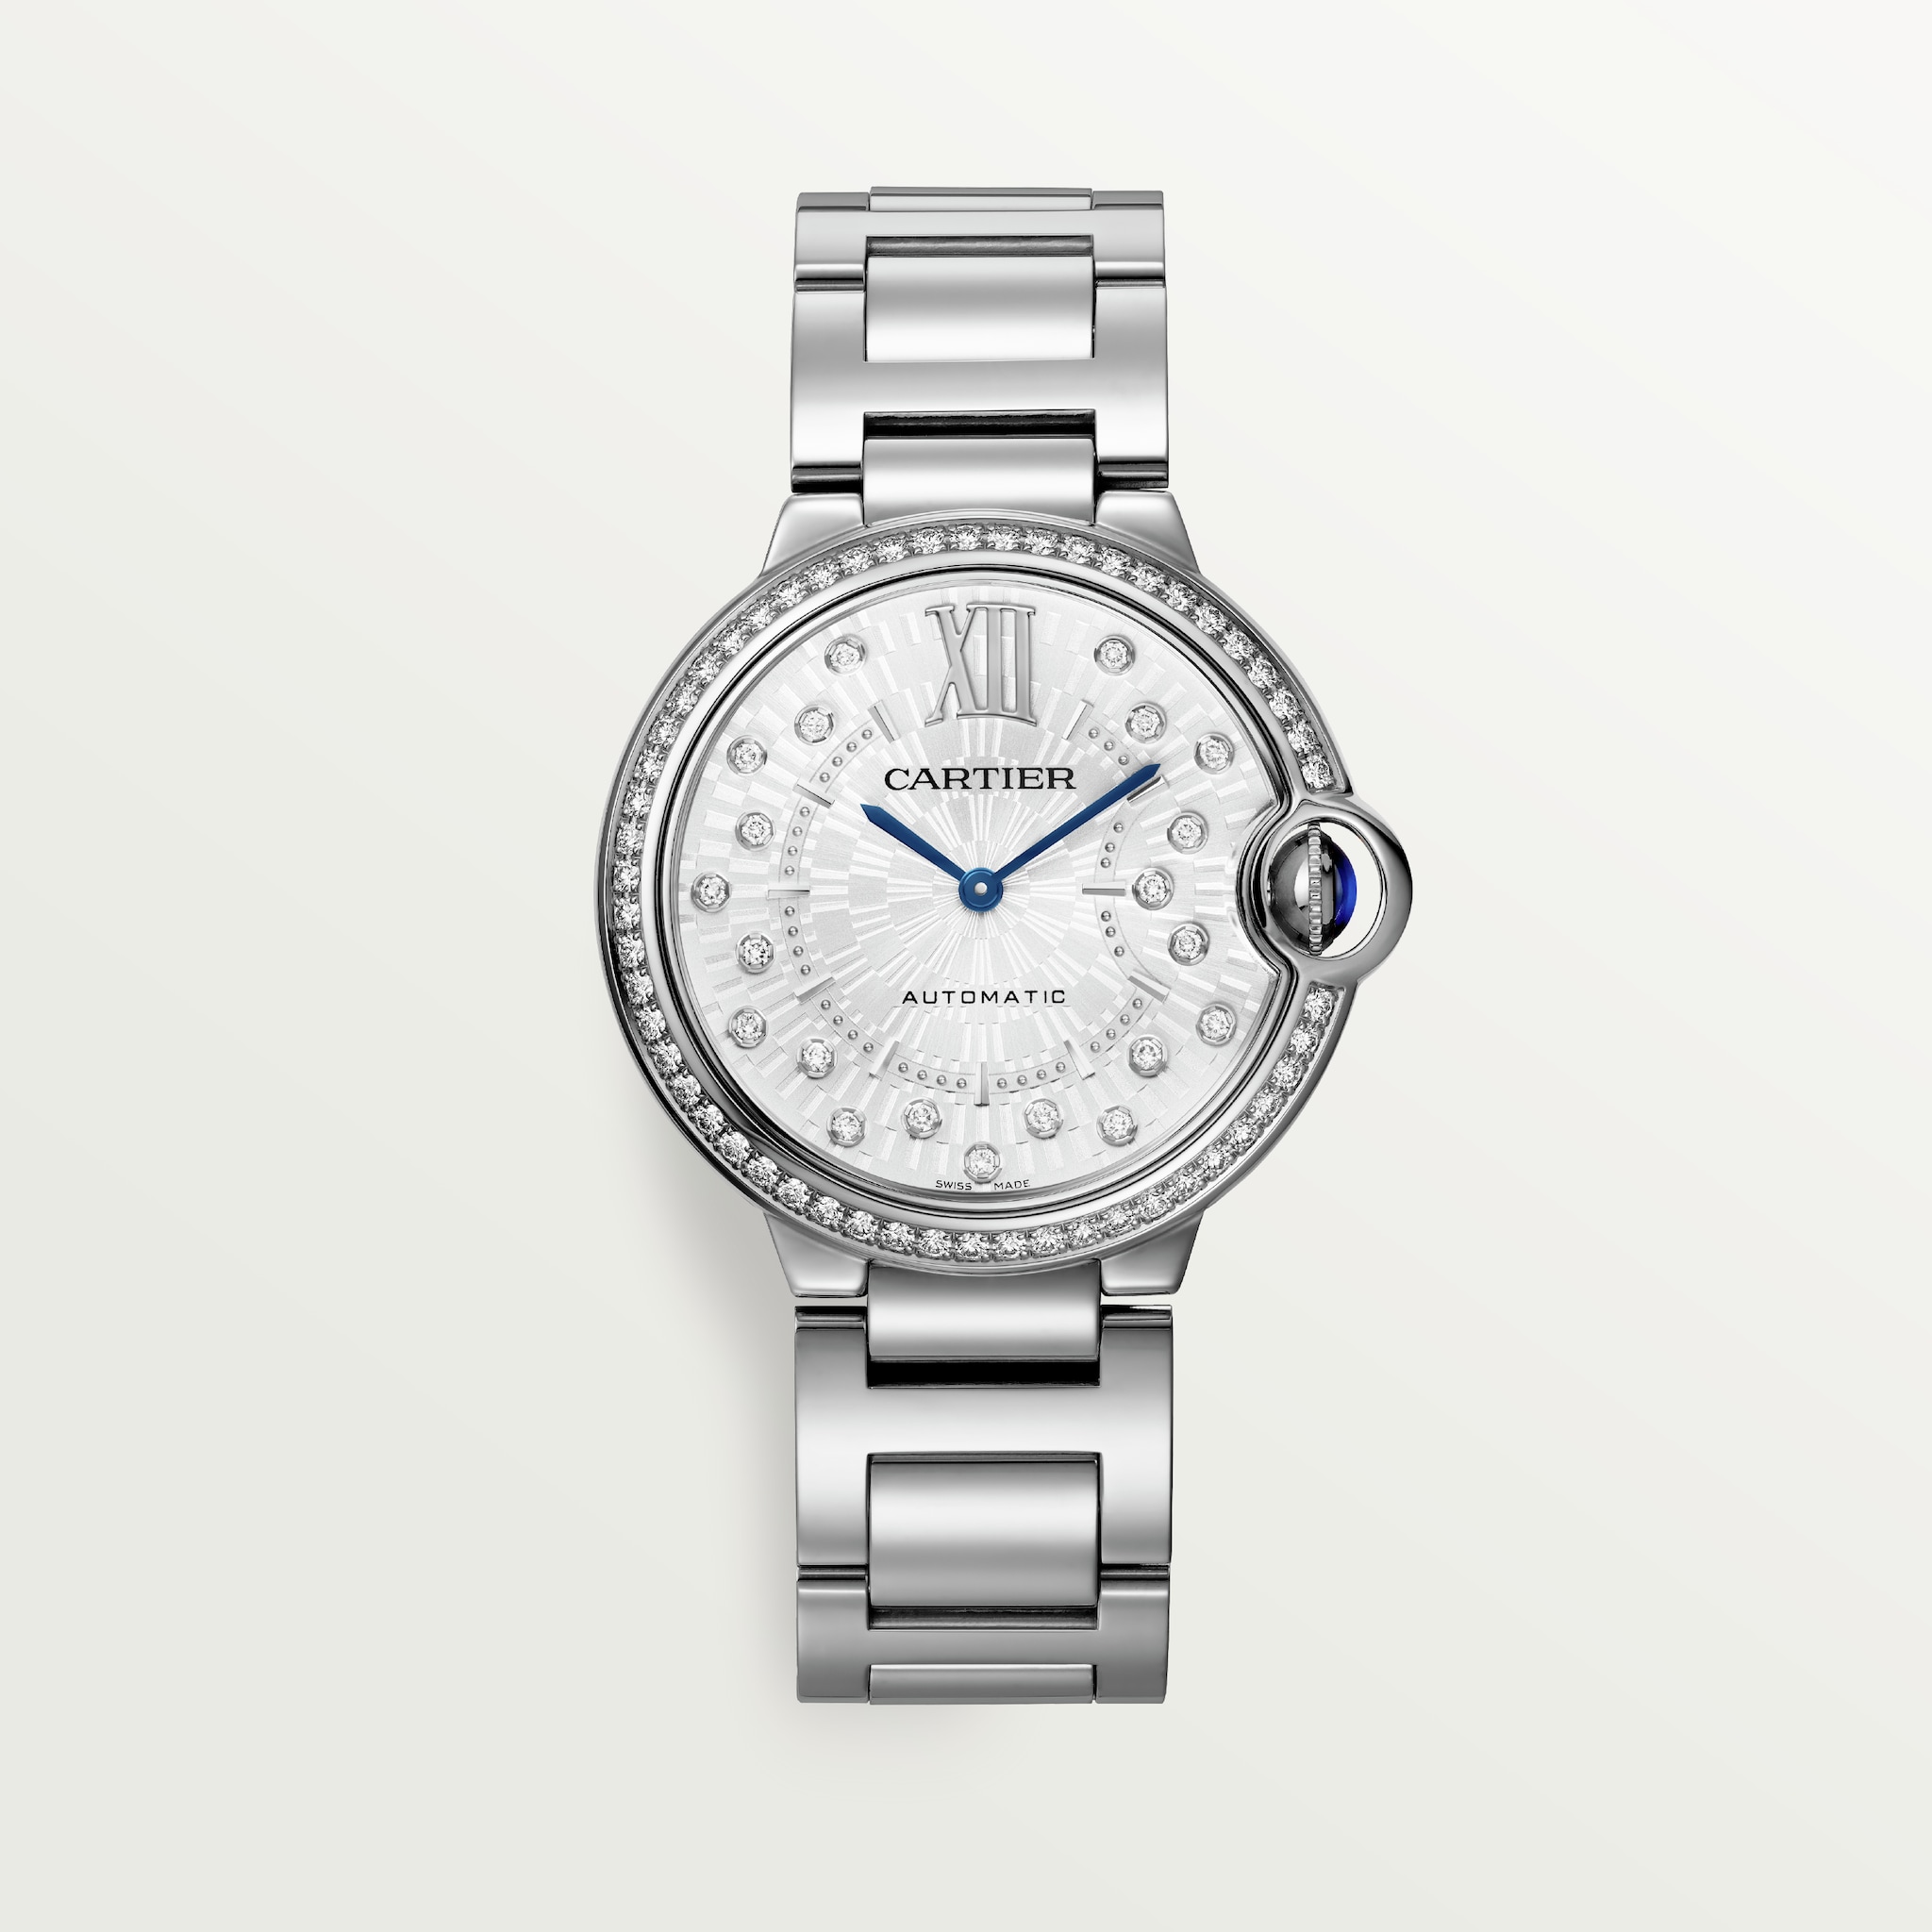 Ballon Bleu de Cartier watch36 mm, automatic mechanical movement, steel, diamonds